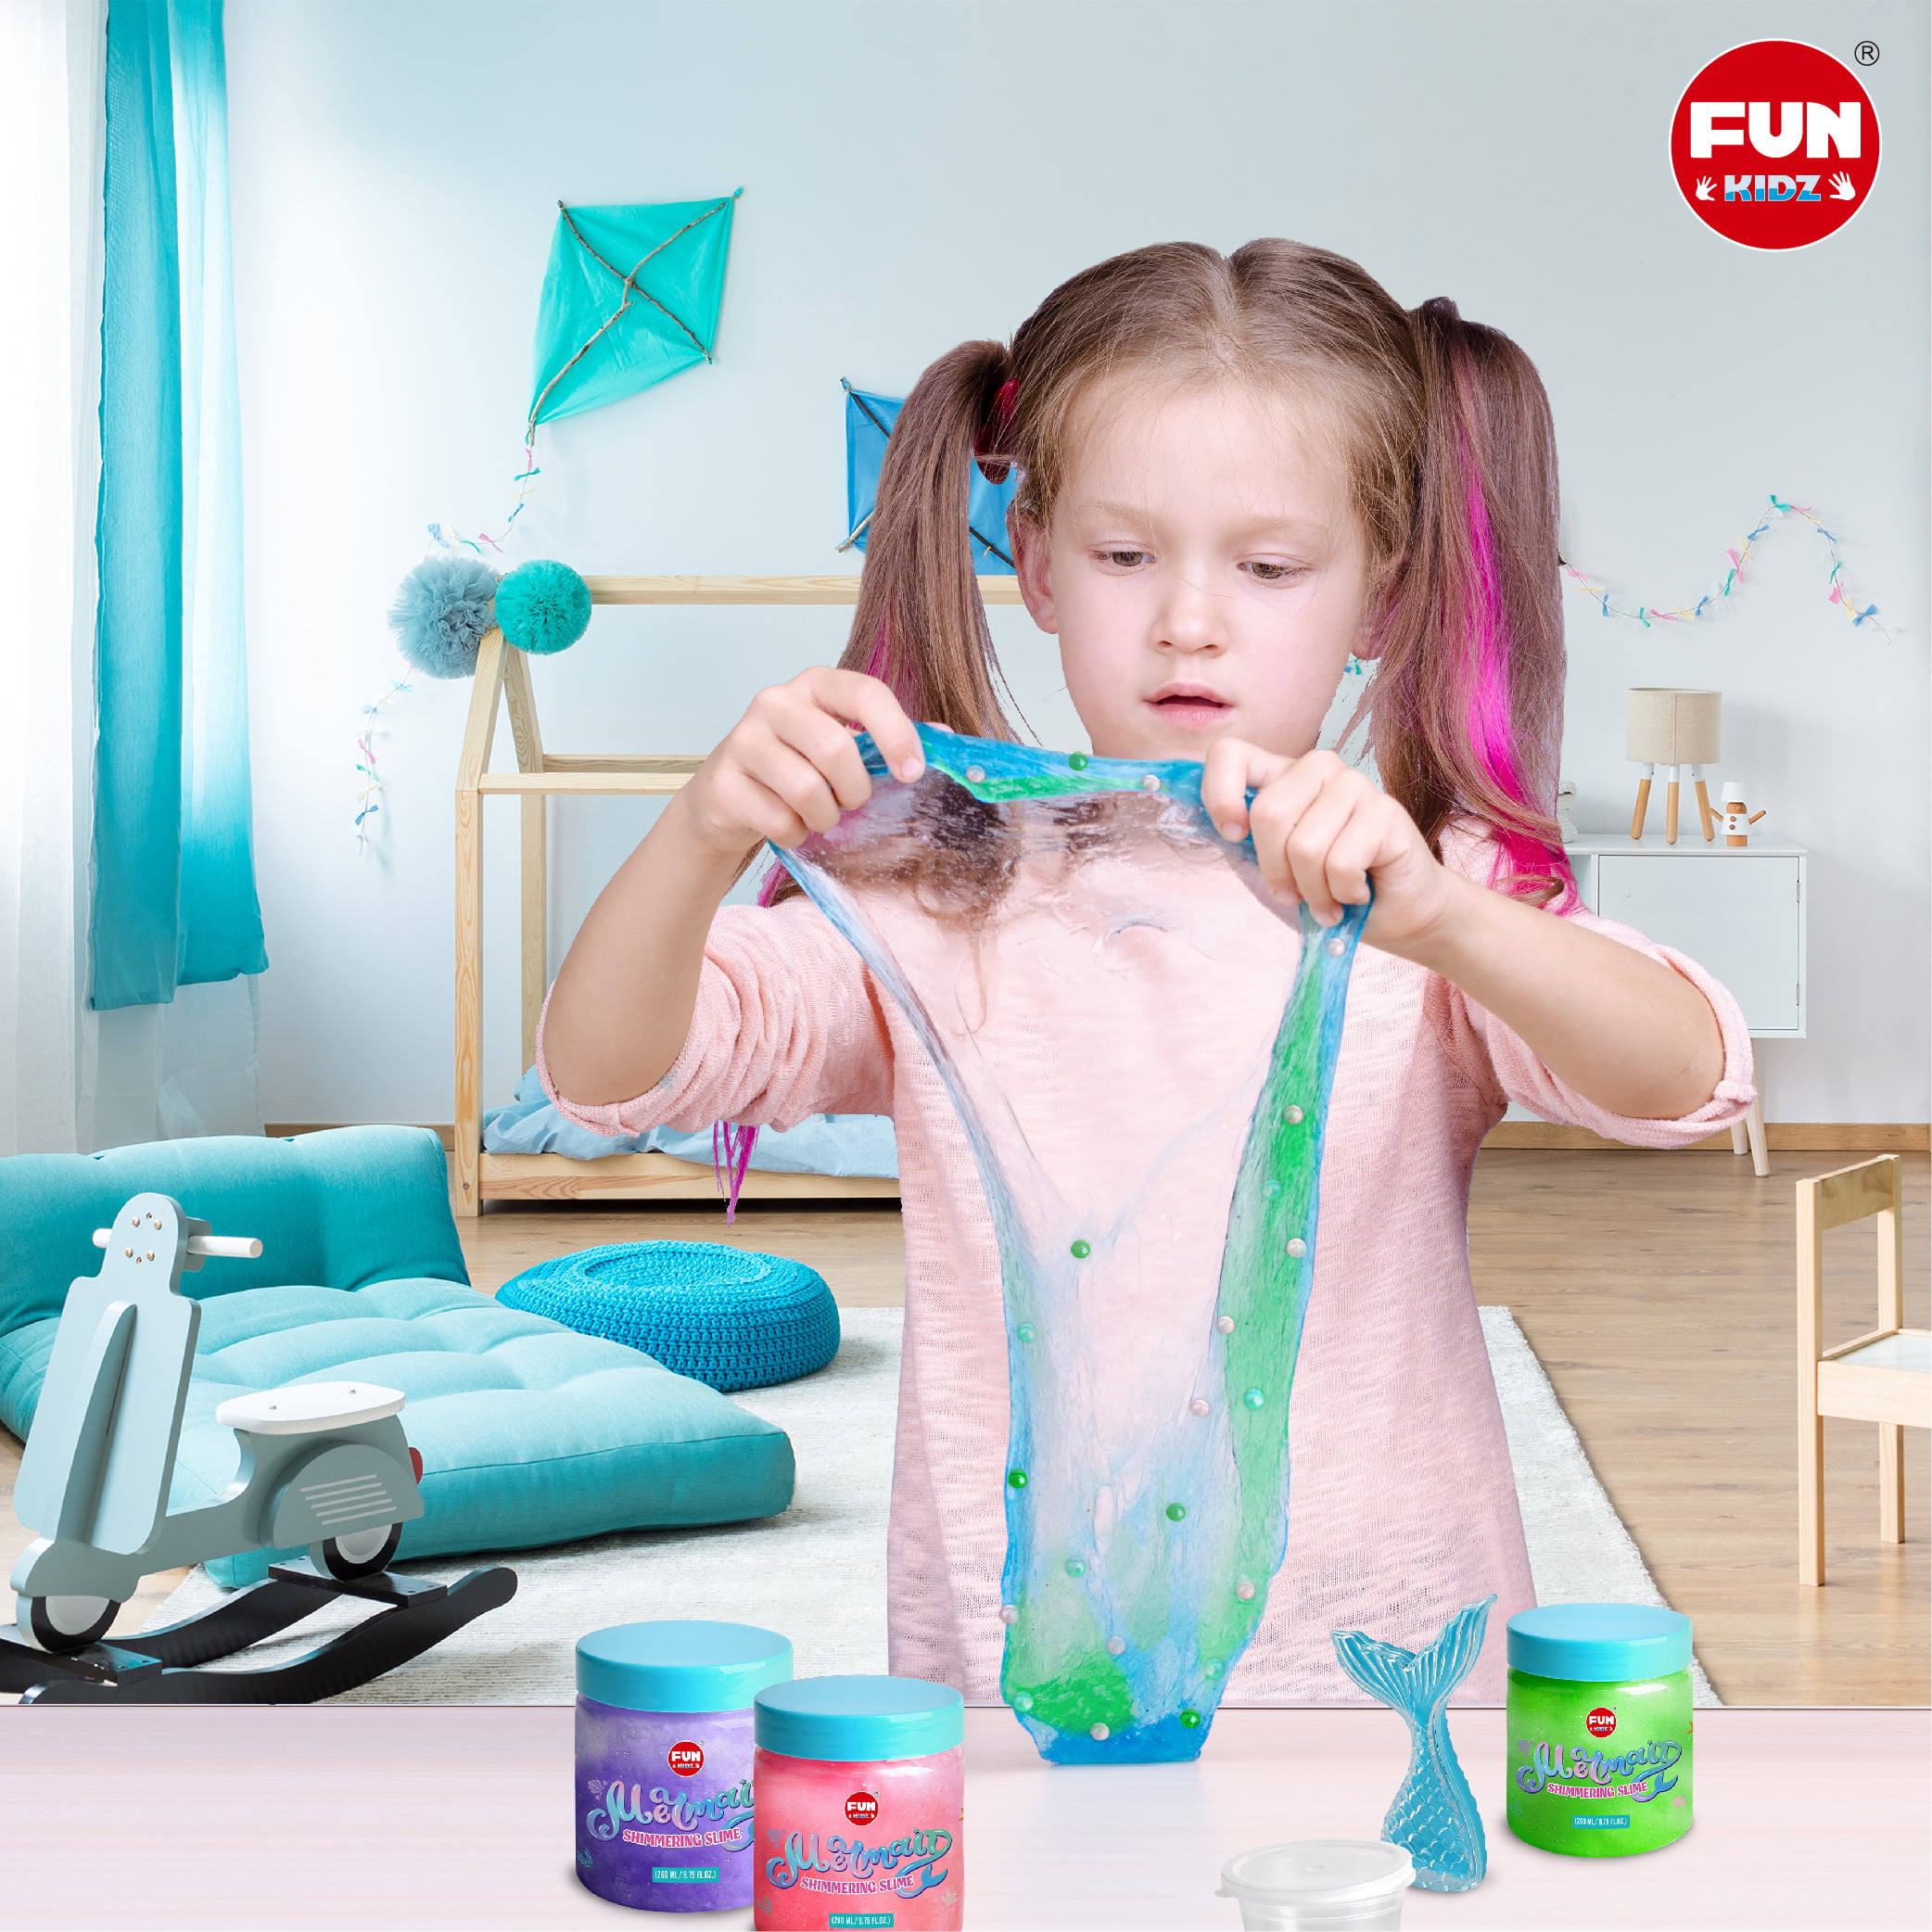 Summer Mermaid Slime Kit for Girls 10-12, FunKidz Shimmer Slime Making Kit  for Kids Ages 8-10 DIY Fluffy Glitter Slime Toy Mermaid Gift